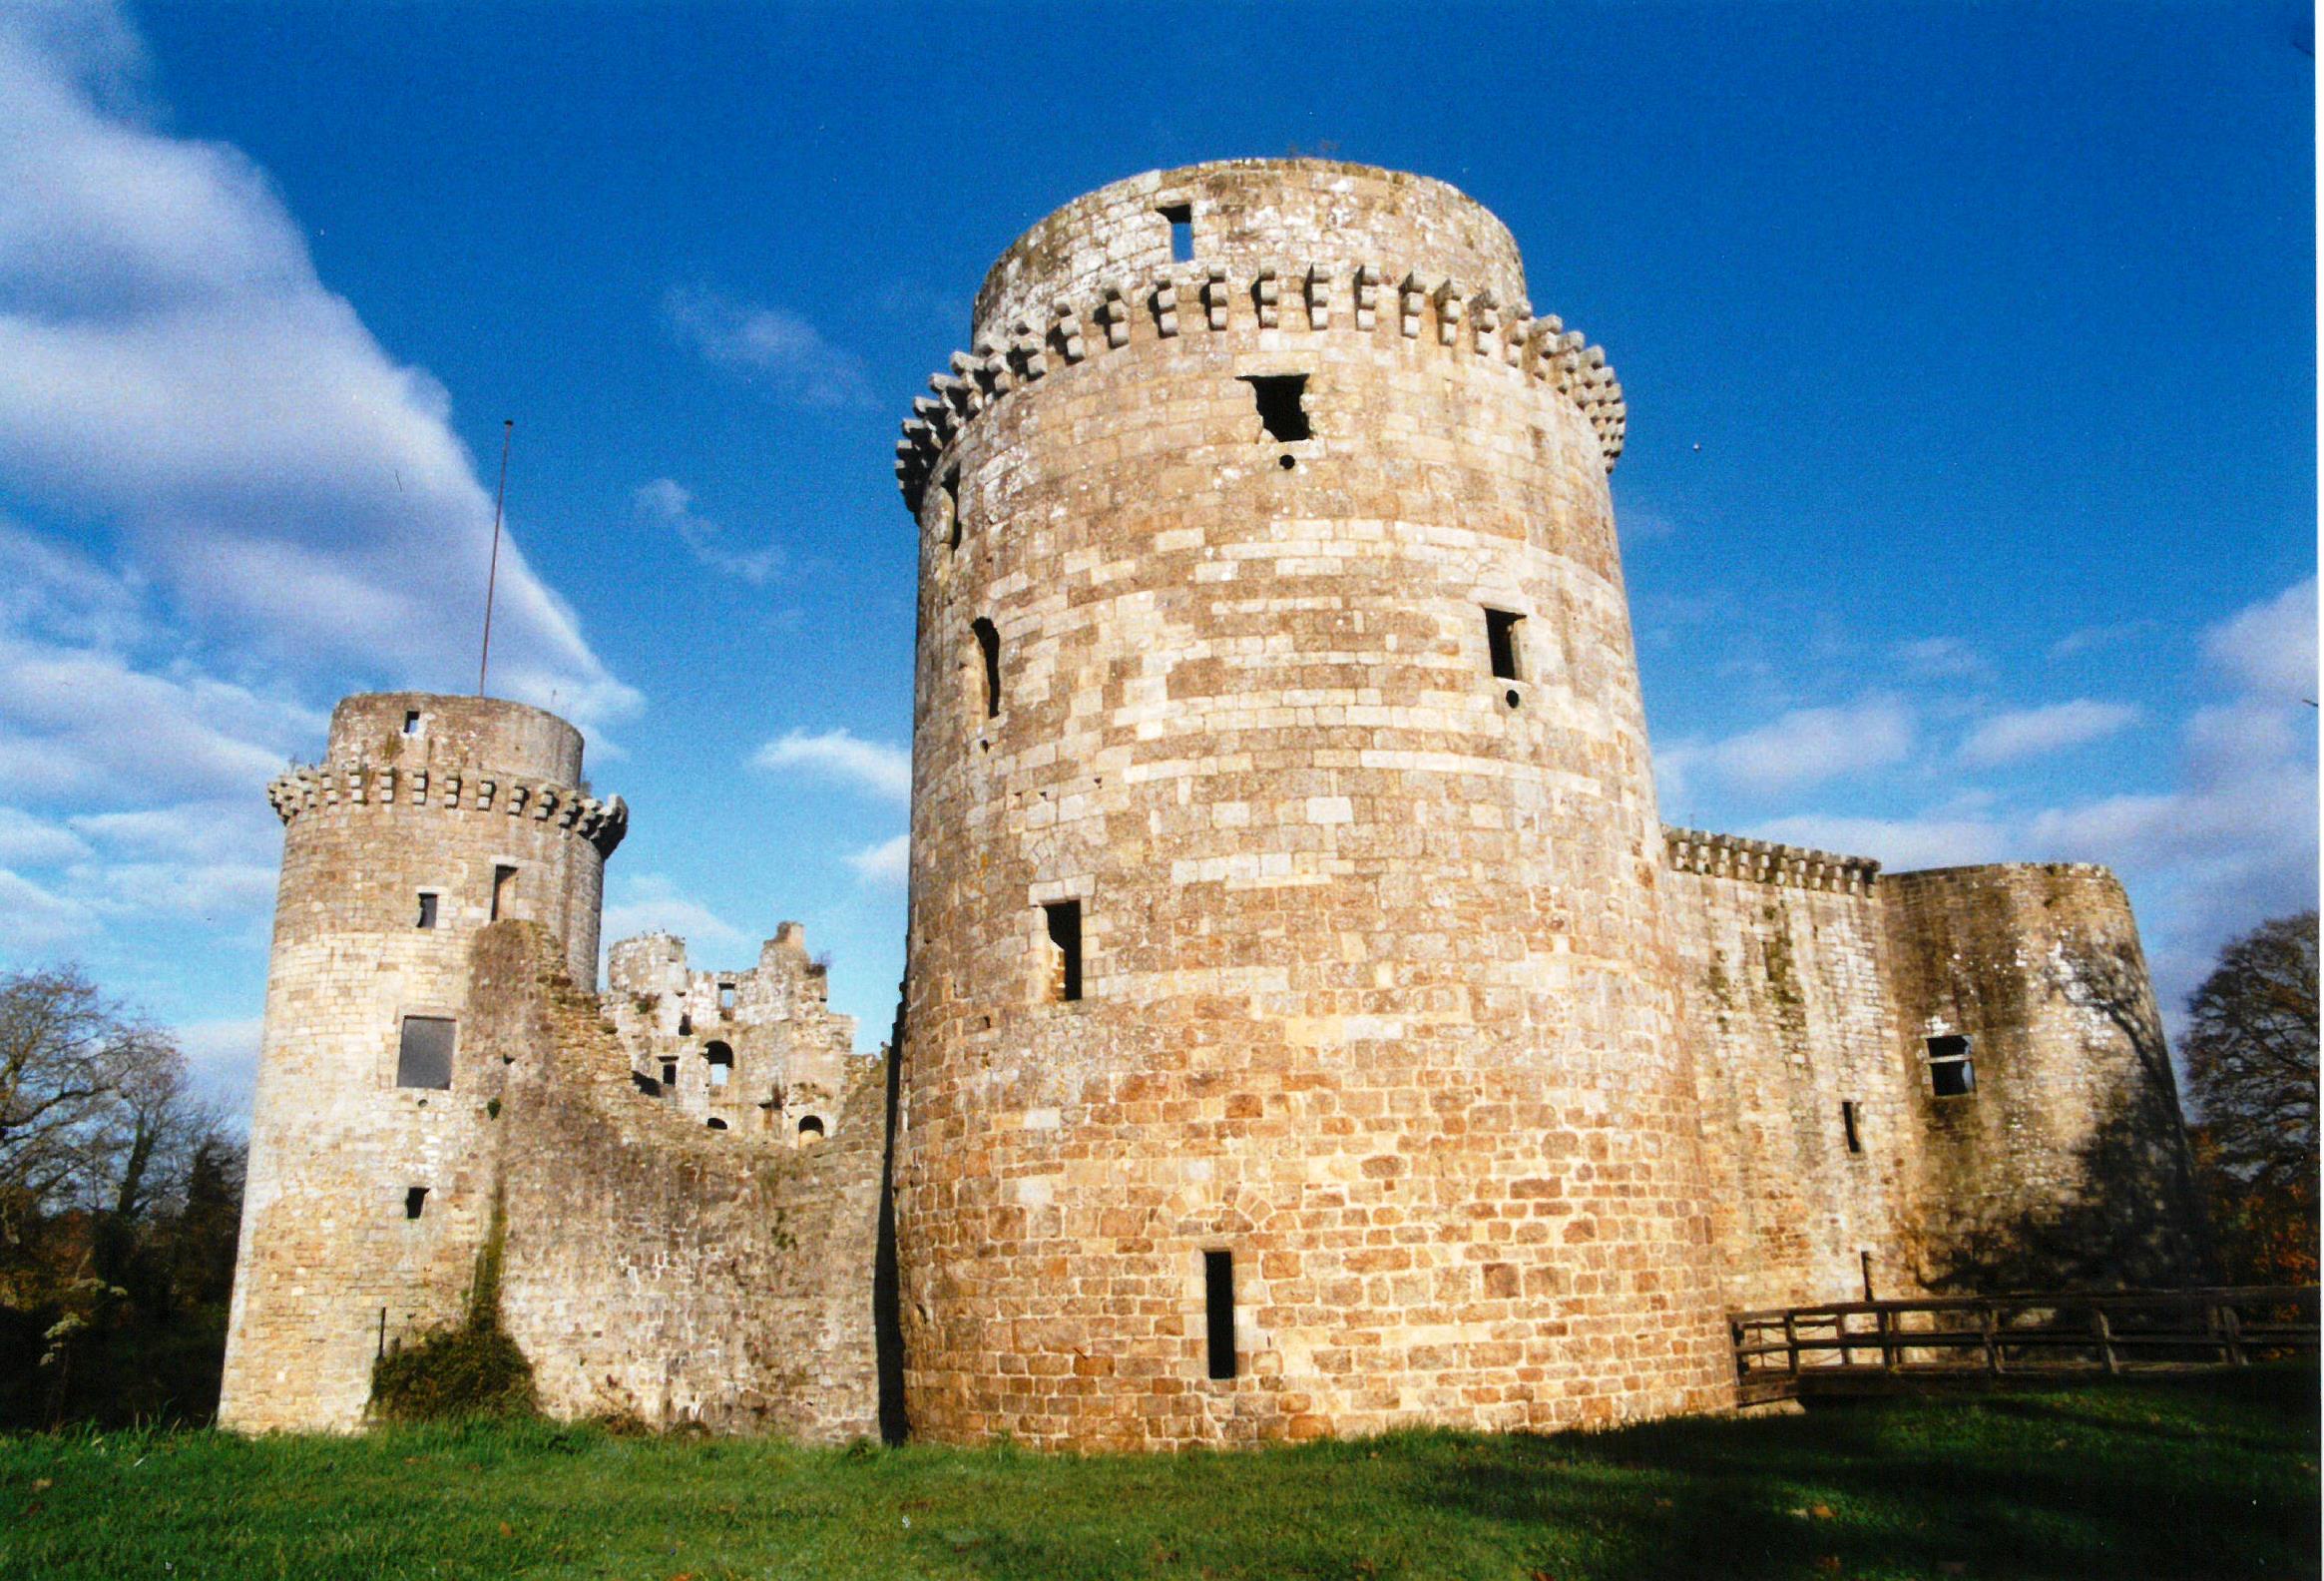 Tours sud-ouest dite « tour noire », sud dite « donjon militaire » qui commande l’accès au château et sud-est dite de la chapelle. Noter les canonnières en allège des niveaux supérieurs. (Cliché Paul Henry, novembre 2002.)